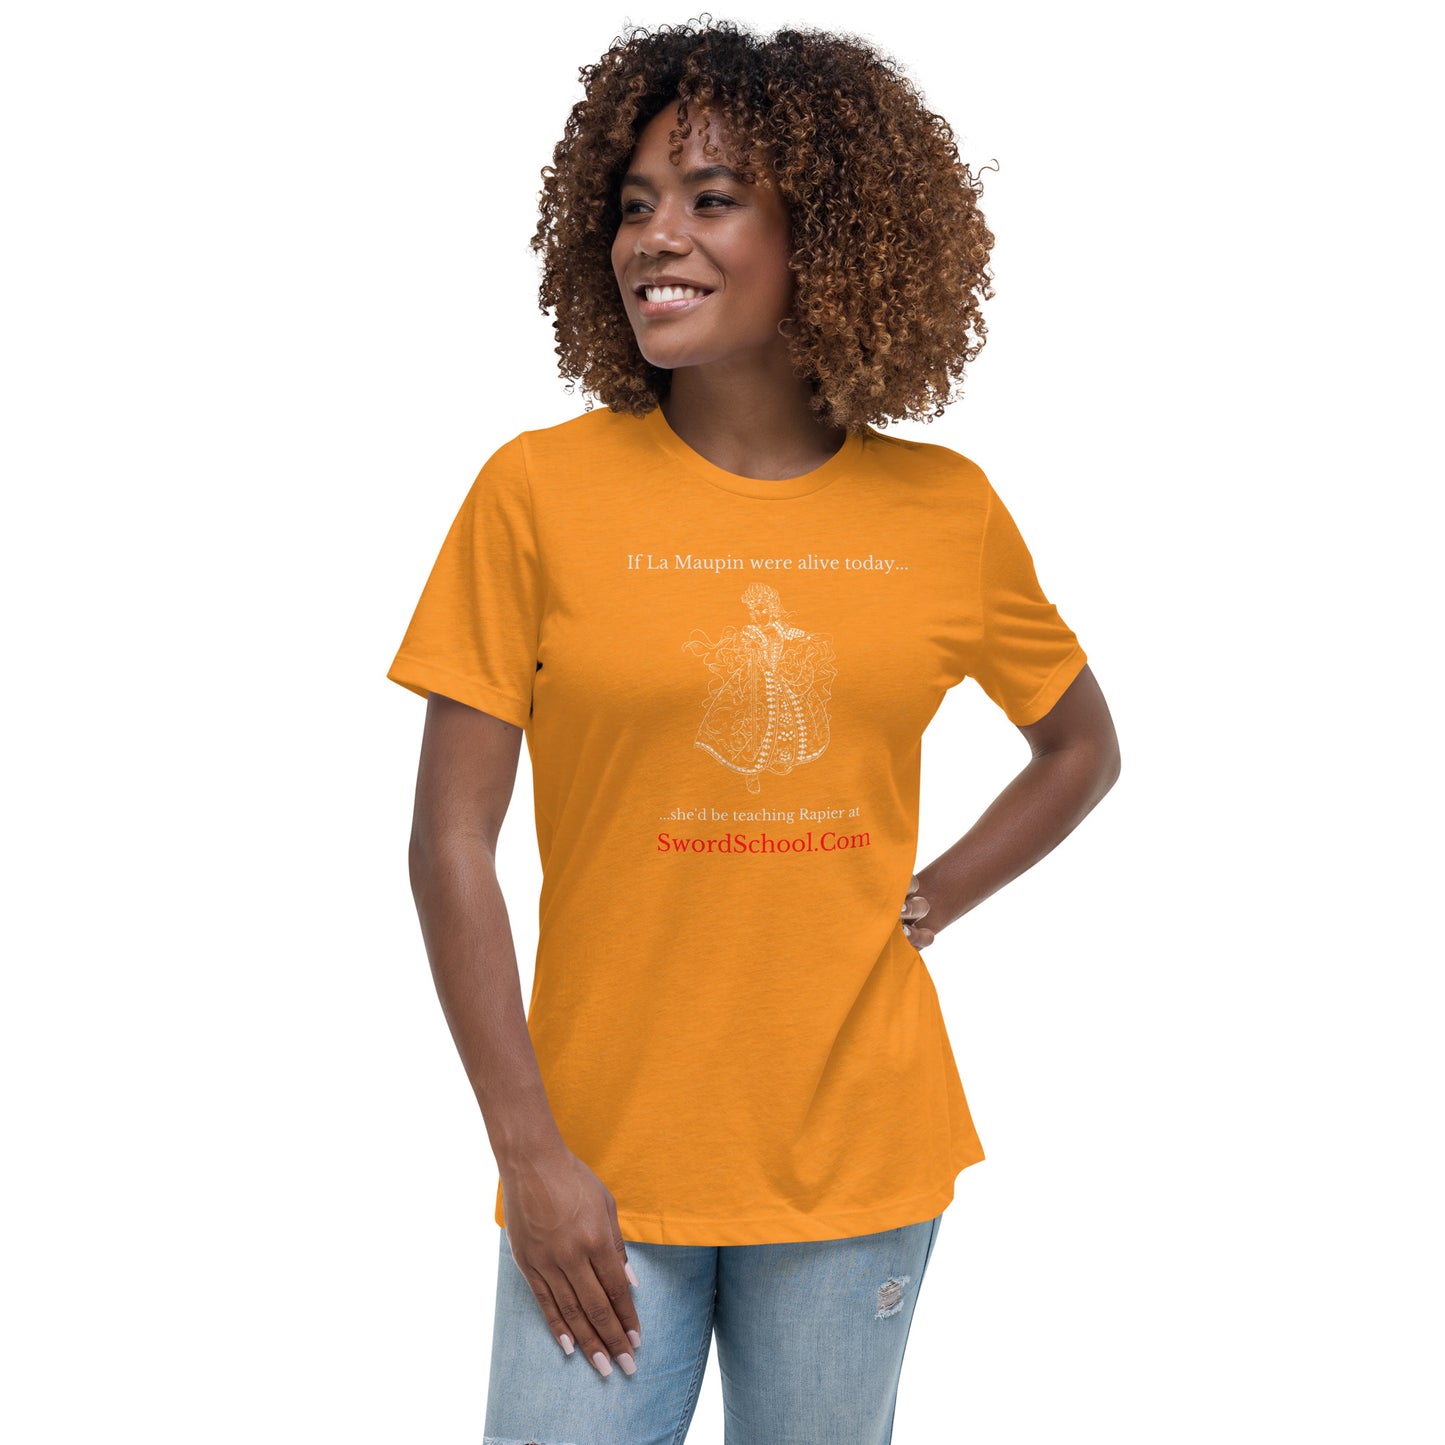 La Maupin Women's T-Shirt